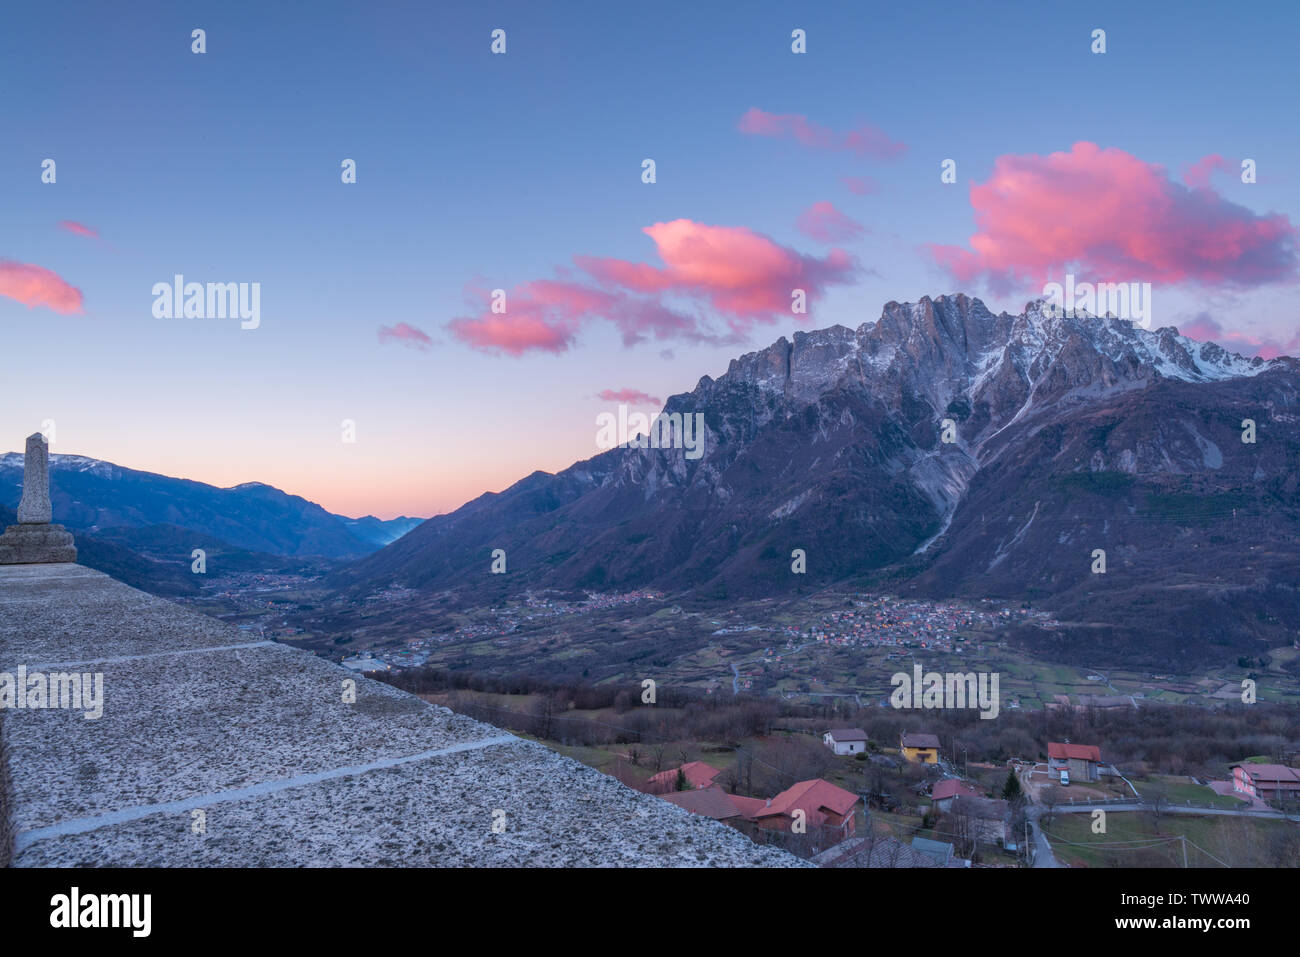 Amanecer sobre la ciudad de Cimbergo en Val Camonica, Italia. Nubes rosadas sobre las montañas, las nubes de colores al amanecer en el valle. Foto de stock